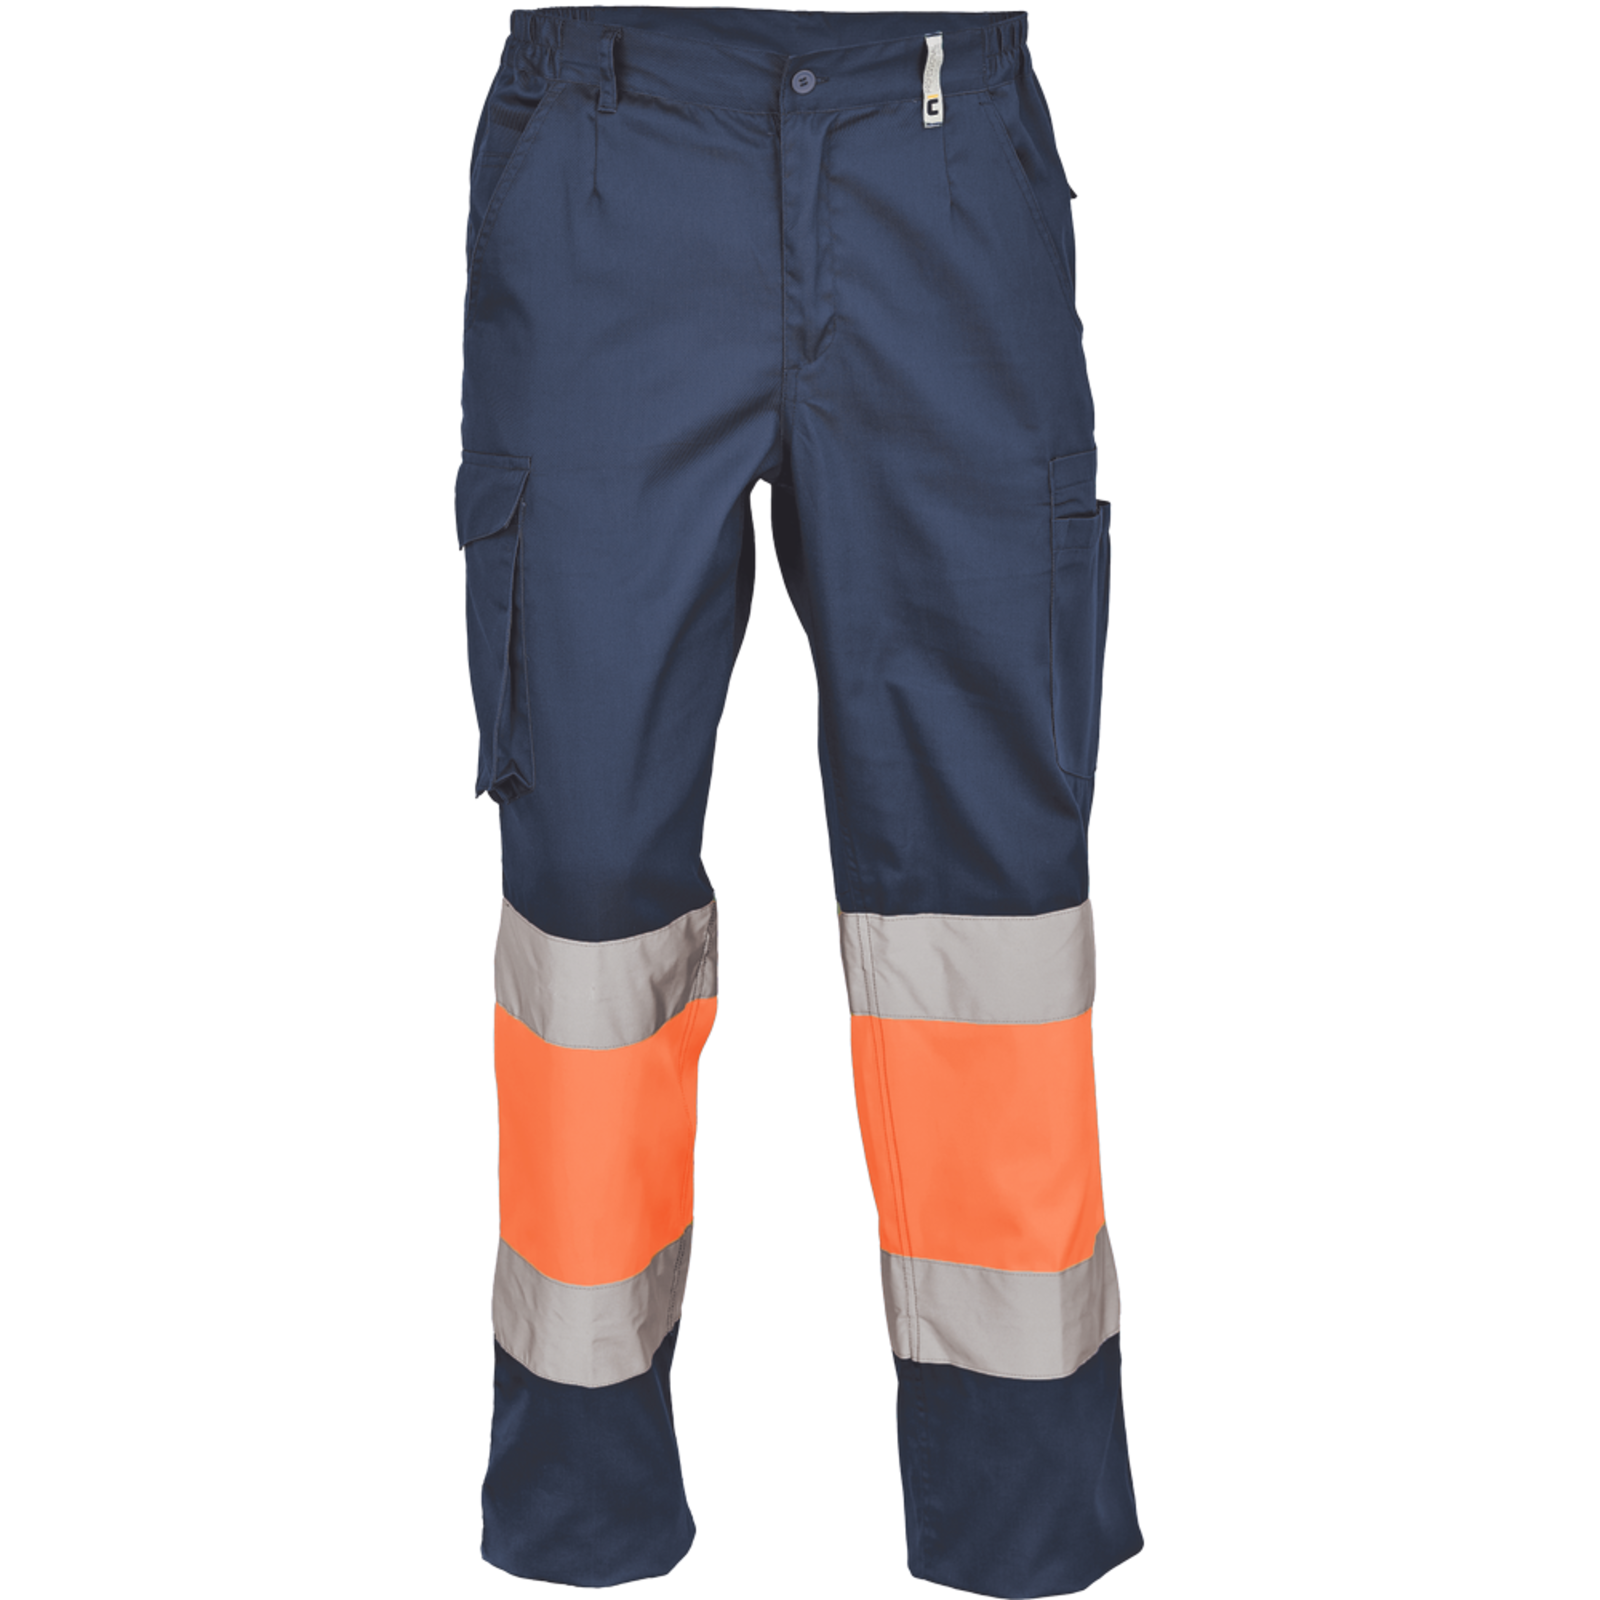 Pracovné reflexné nohavice Cerva Ciudades Bilbao HV - veľkosť: 58, farba: nám. modrá/oranžová